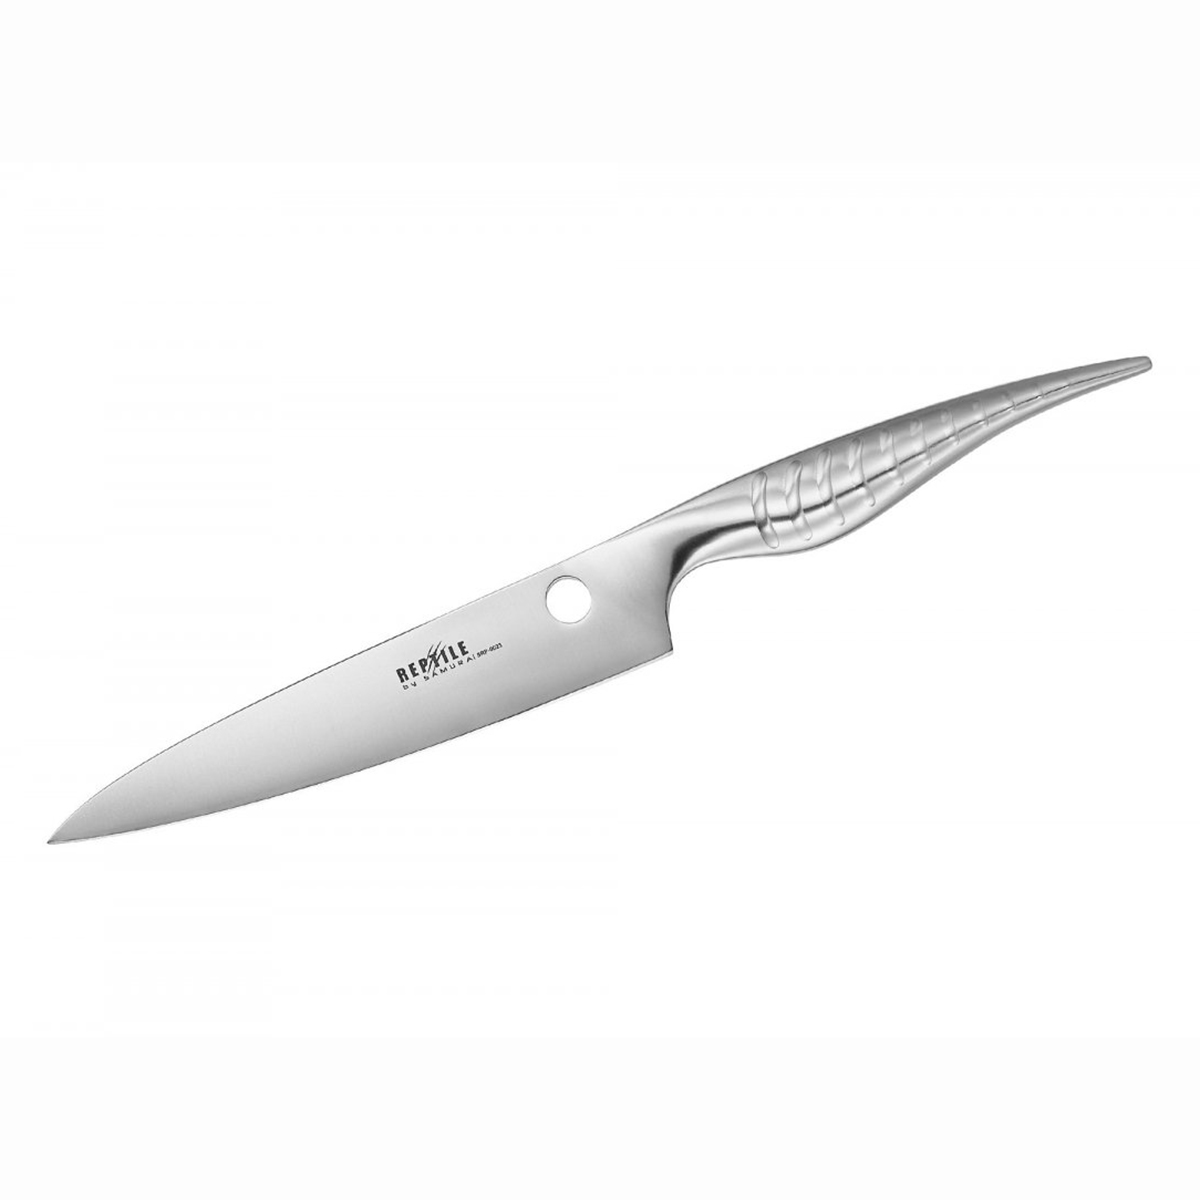 Μαχαίρι γενικής χρήσης 16.8cm, REPTILE - SAMURA®️